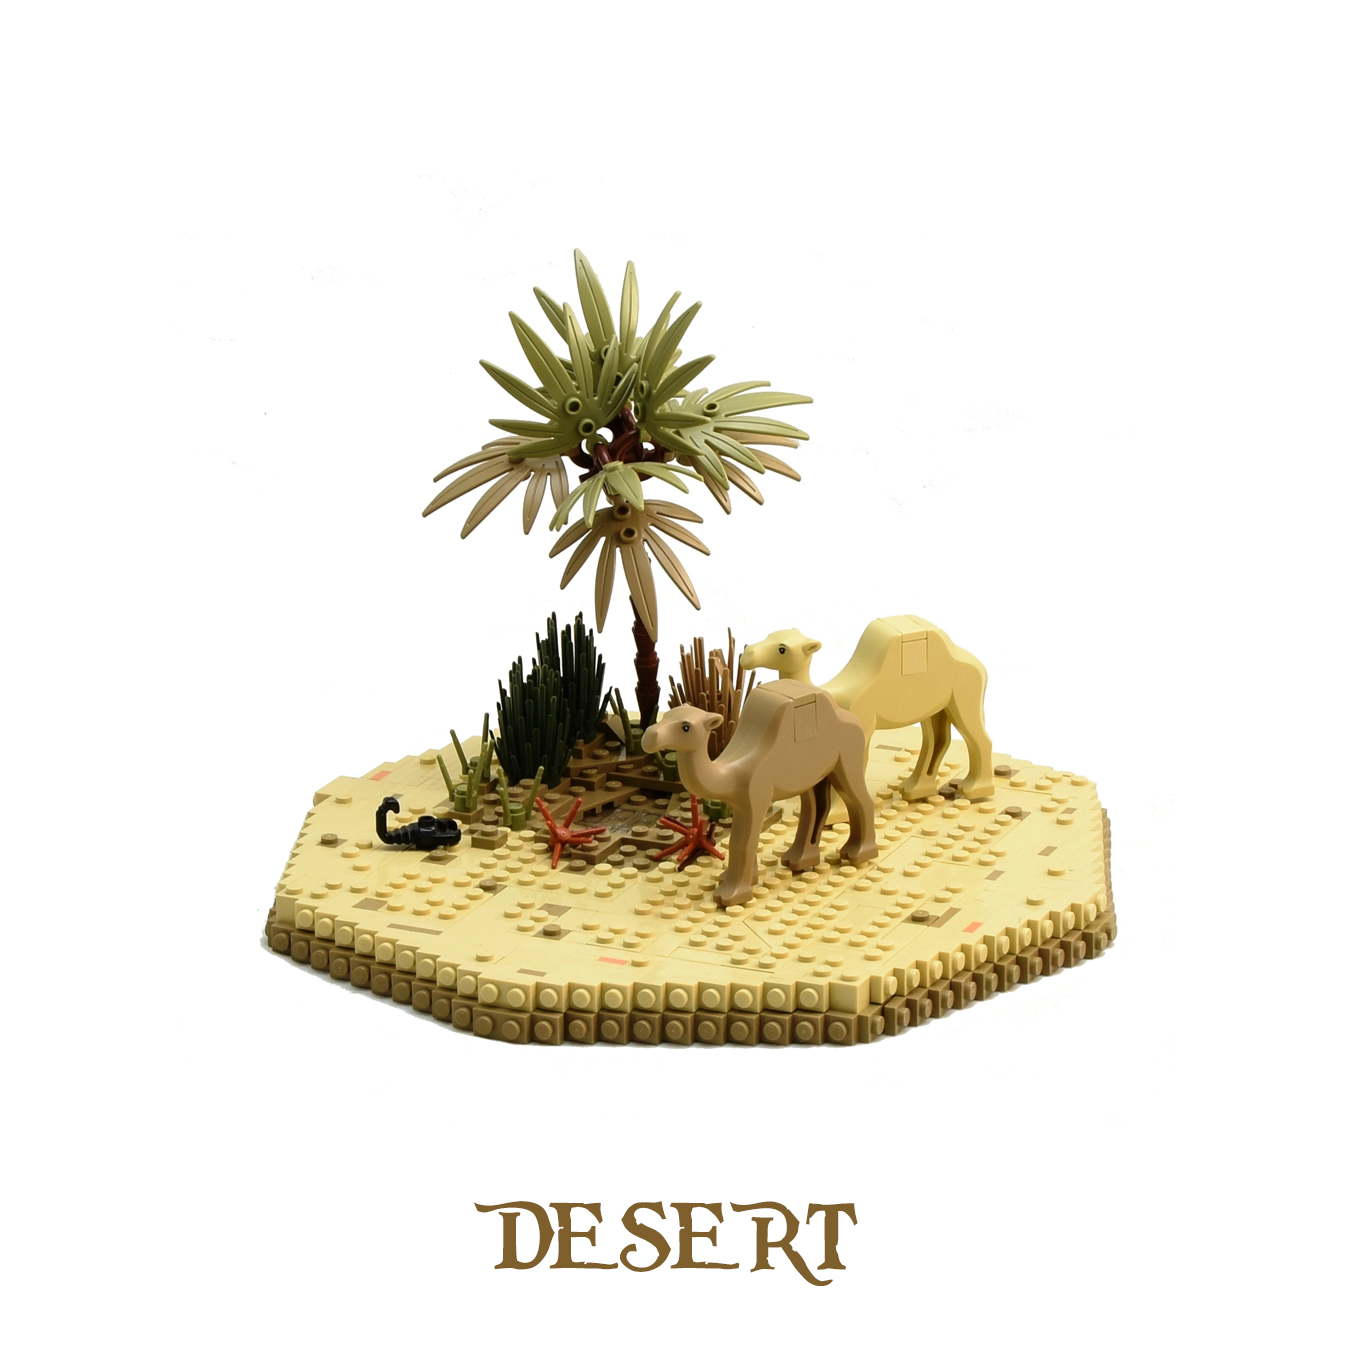 hex-desert-labeled.jpg